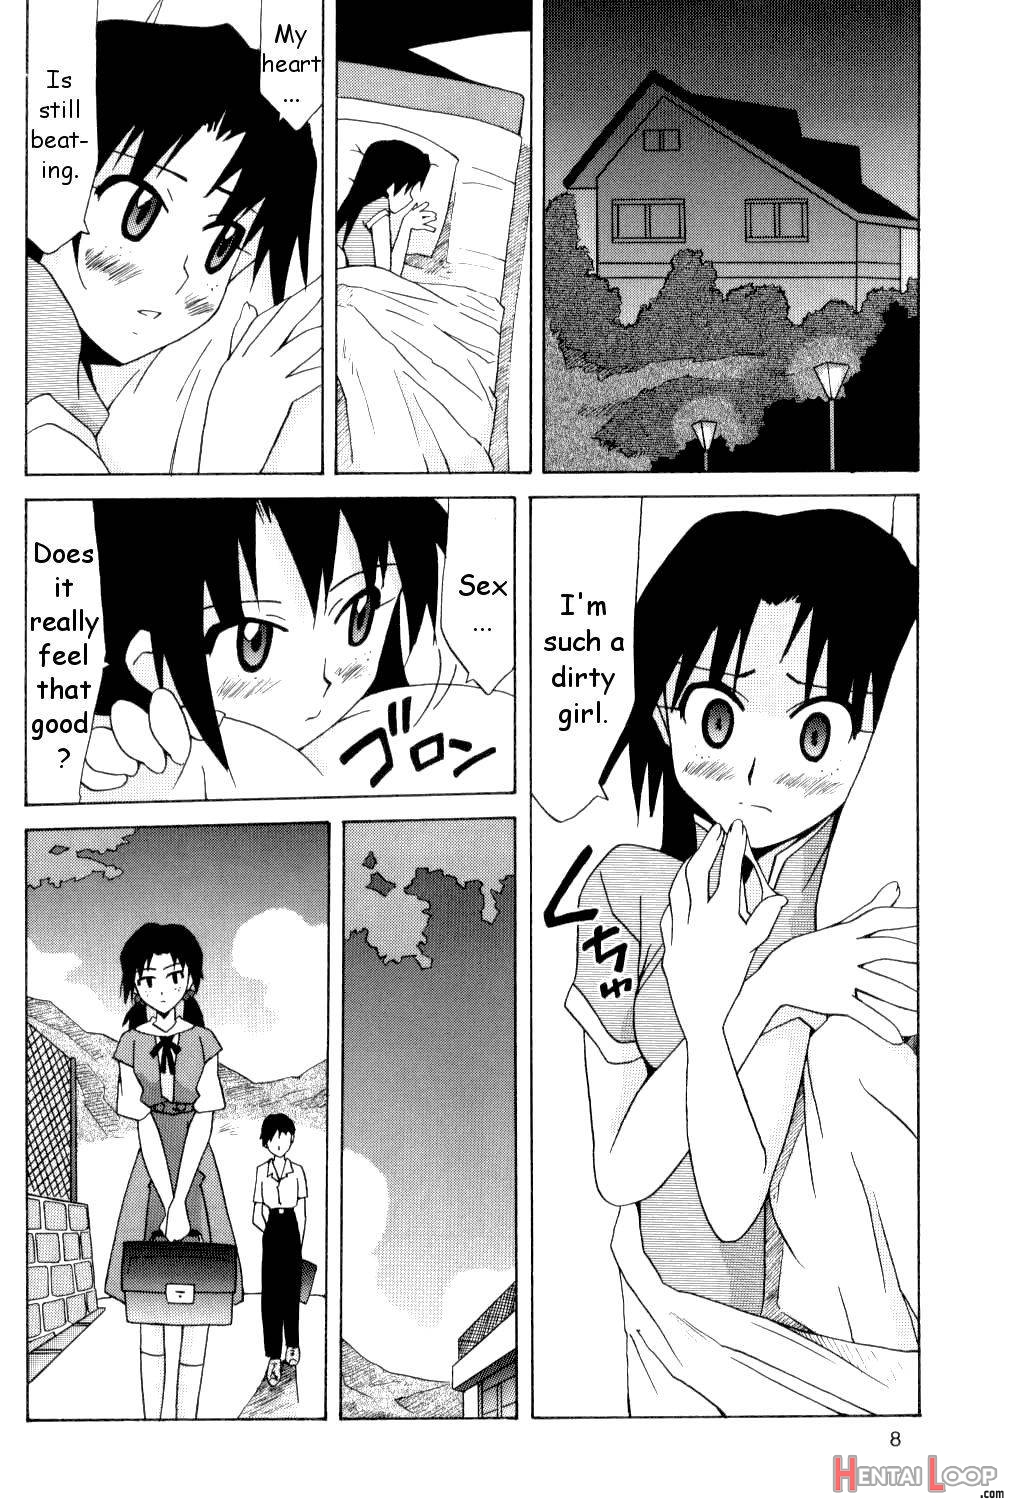 Hikari to Asuka page 7